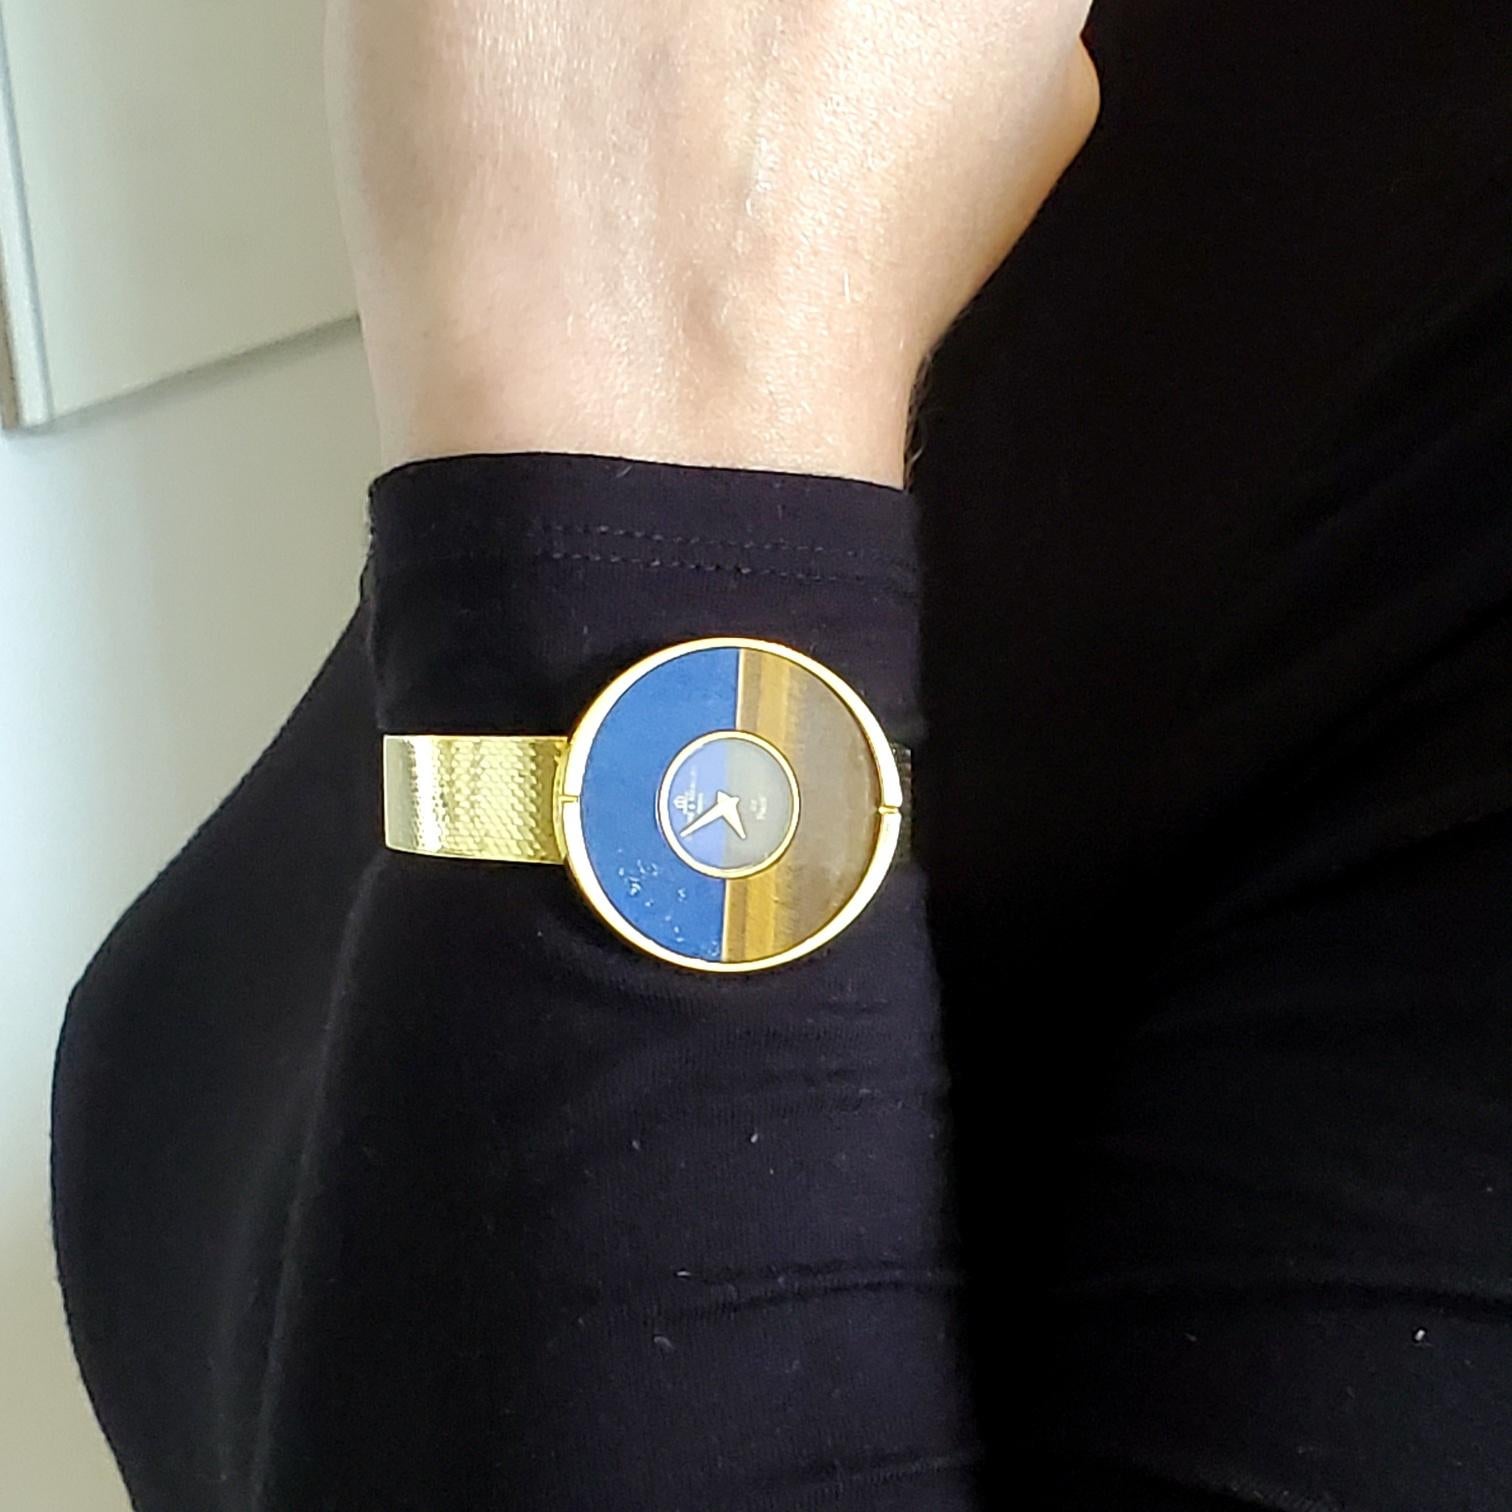 Exceptionnel bracelet-montre conçu par Baume & Mercier.

Un bracelet-montre géométrique moderniste, créé au début des années 1970. Cette pièce unique a été soigneusement fabriquée à Genève, en Suisse, en or jaune massif de 18 carats et en pierres